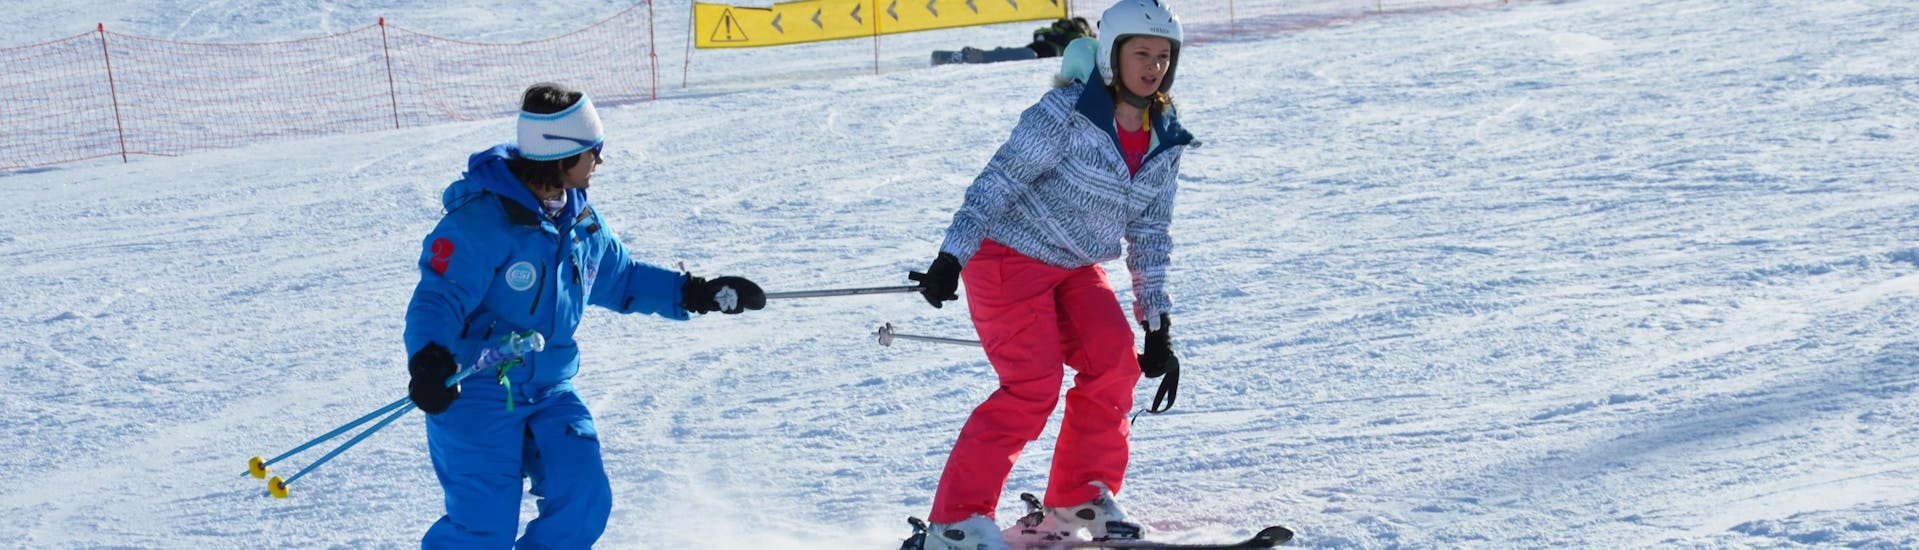 Un moniteur de l'European Ski School des Deux Alpes accompagne une skieuse dans ses premiers pas à ski durant un cours particulier de ski pour adultes.